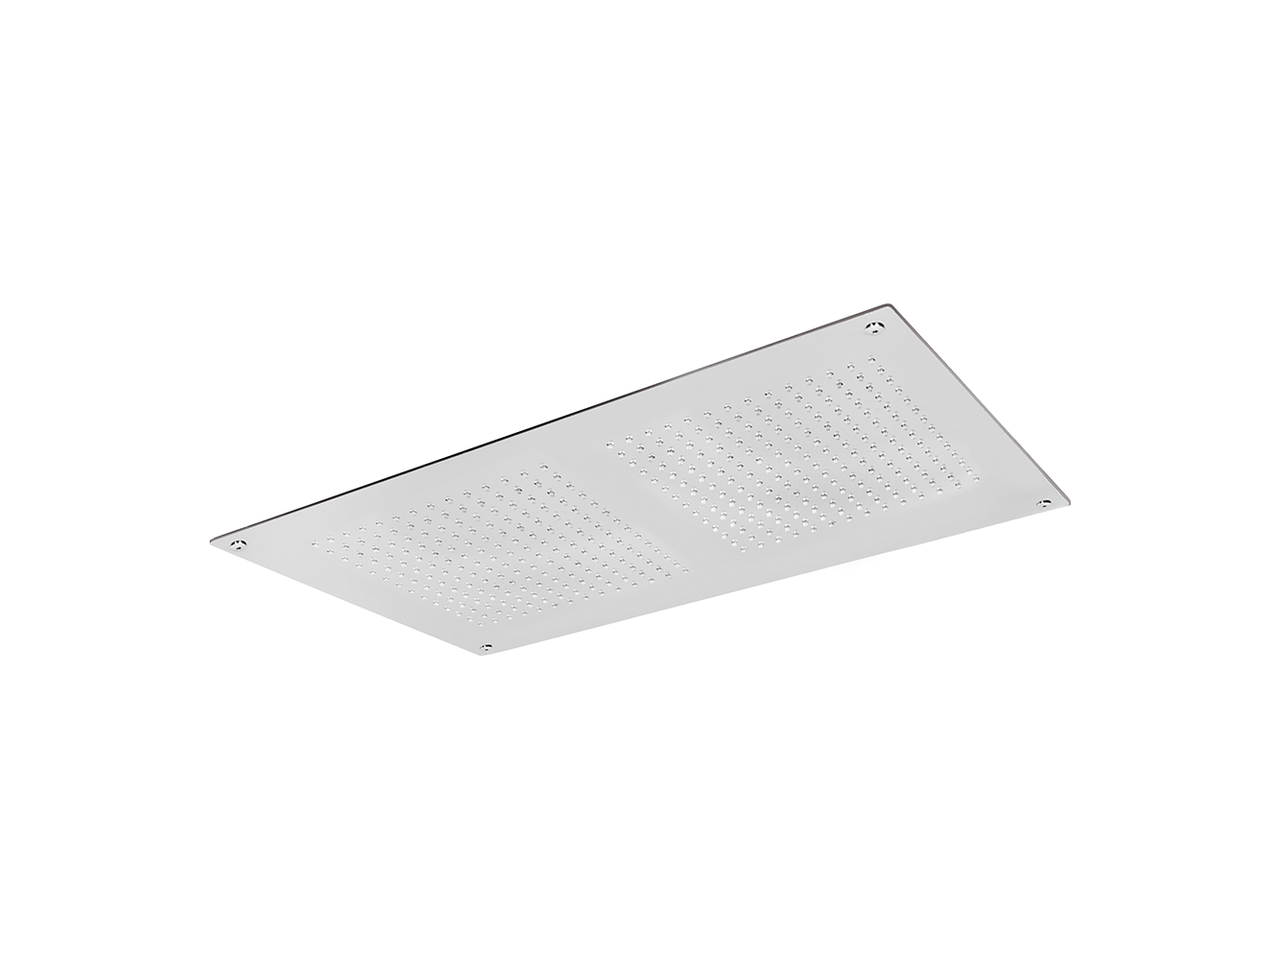 490x350mm stainless steel false ceiling showerhead ZEN - v1